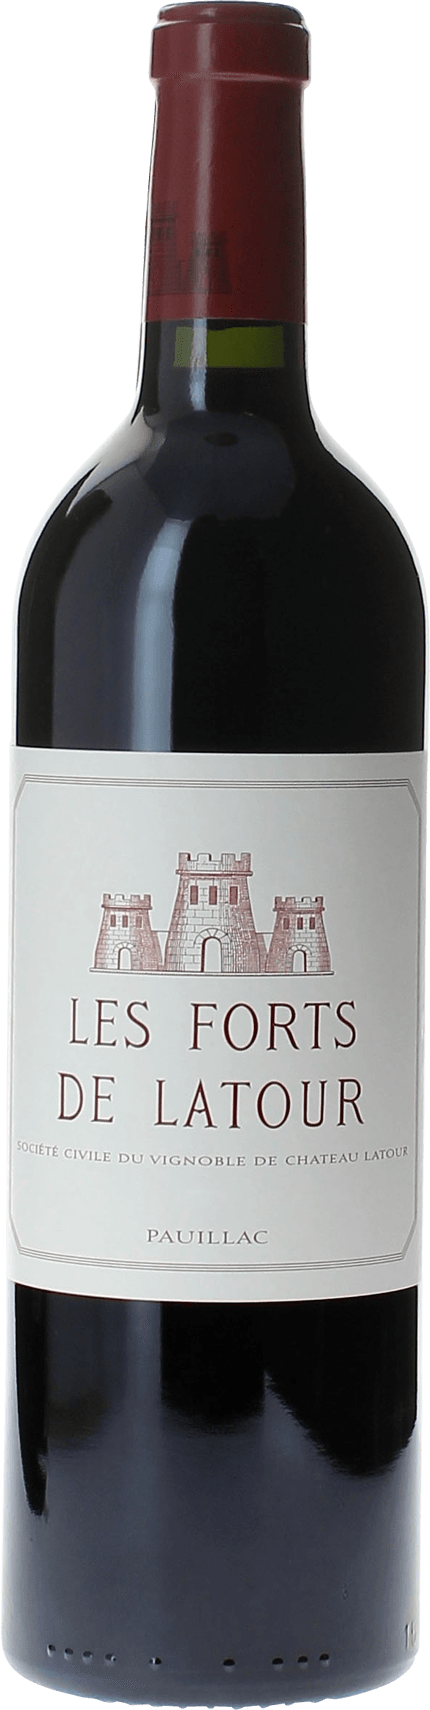 Les forts de latour 1988 2me vin de LATOUR Pauillac, Bordeaux rouge